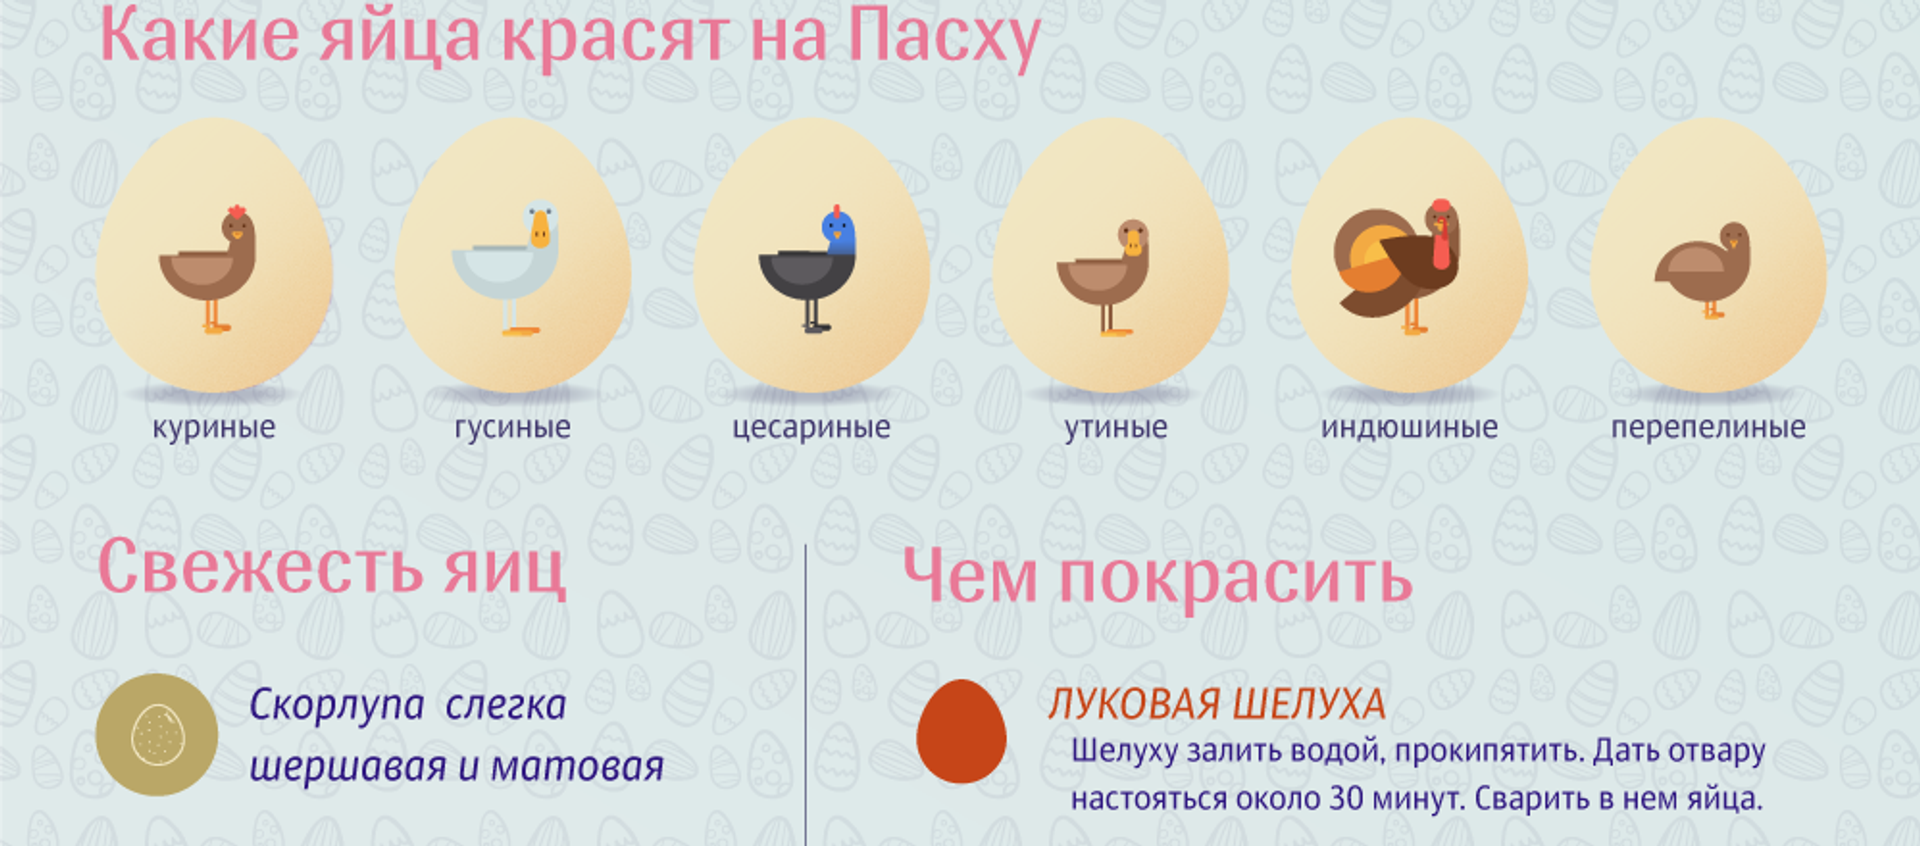 Как выбрать и покрасить яйца к Пасхе - Sputnik Кыргызстан, 1920, 24.04.2019